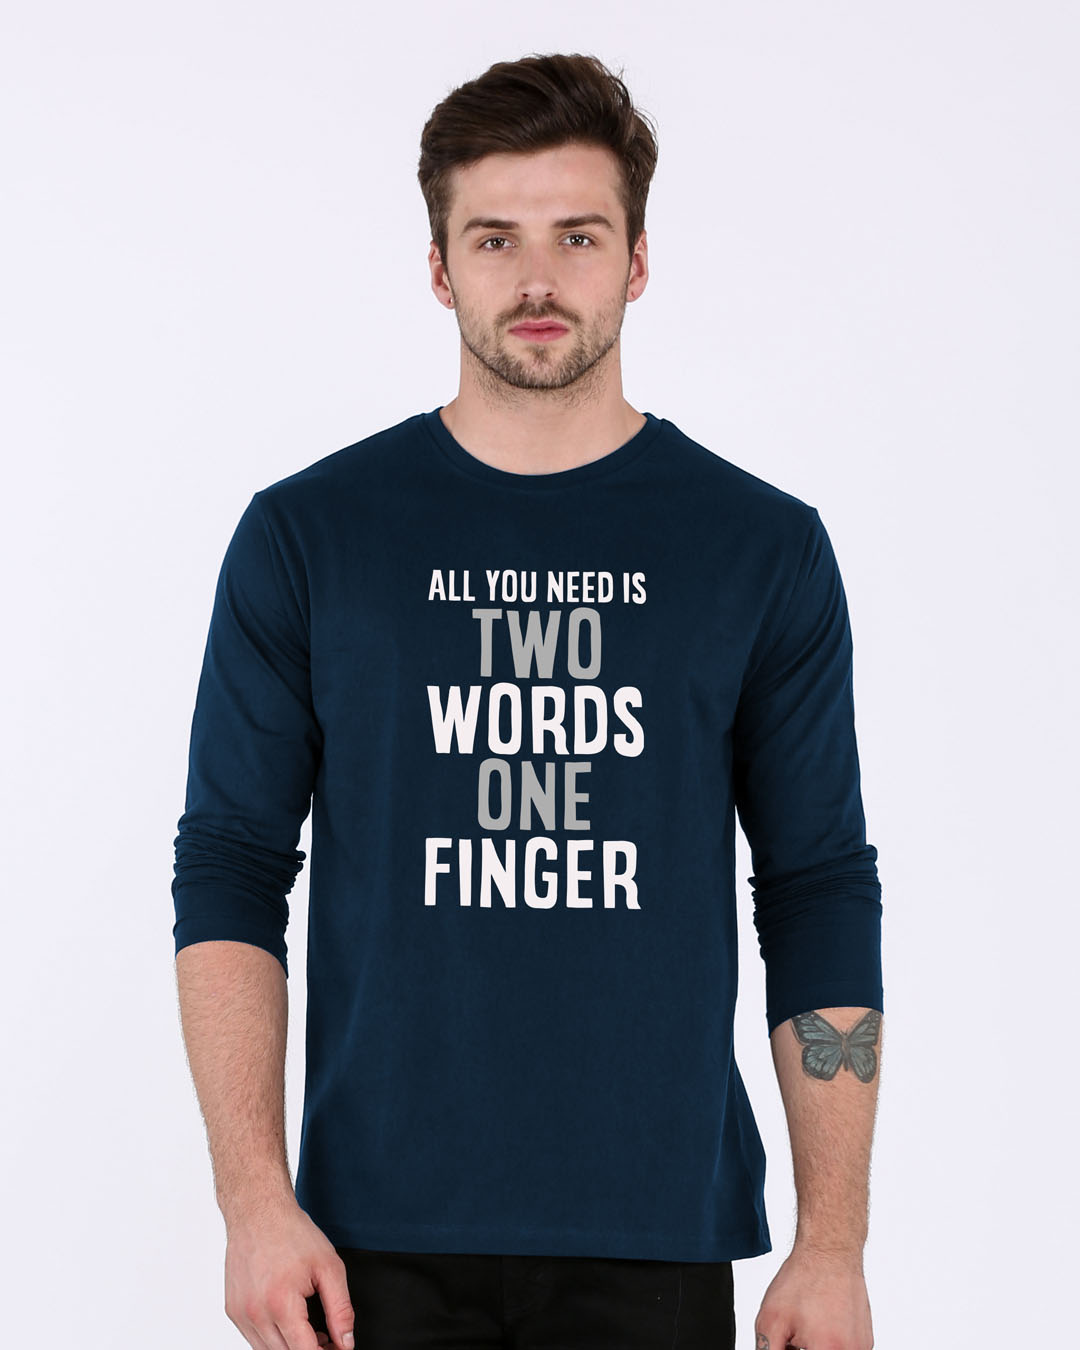 Buy One Finger Blue Printed Full Sleeve T-Shirt For Men Online India @ Bewakoof.com